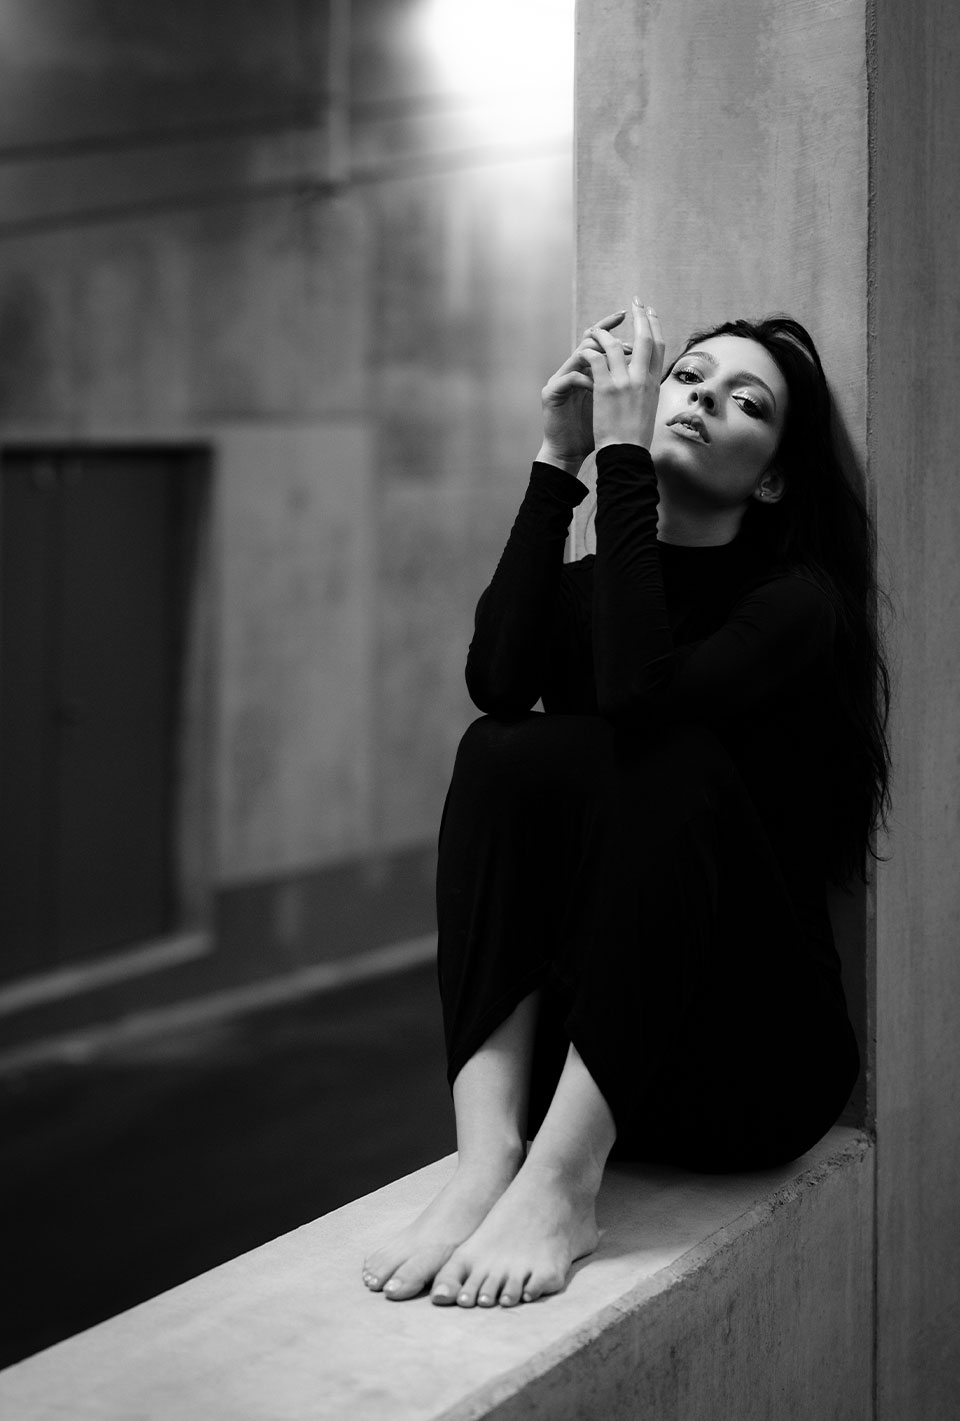 Schwarz-weiße Aufnahme einer Frau in schwarzer Kleidung, die barfuß auf einem Betonvorsprung sitzt und nachdenklich in die Kamera schaut.